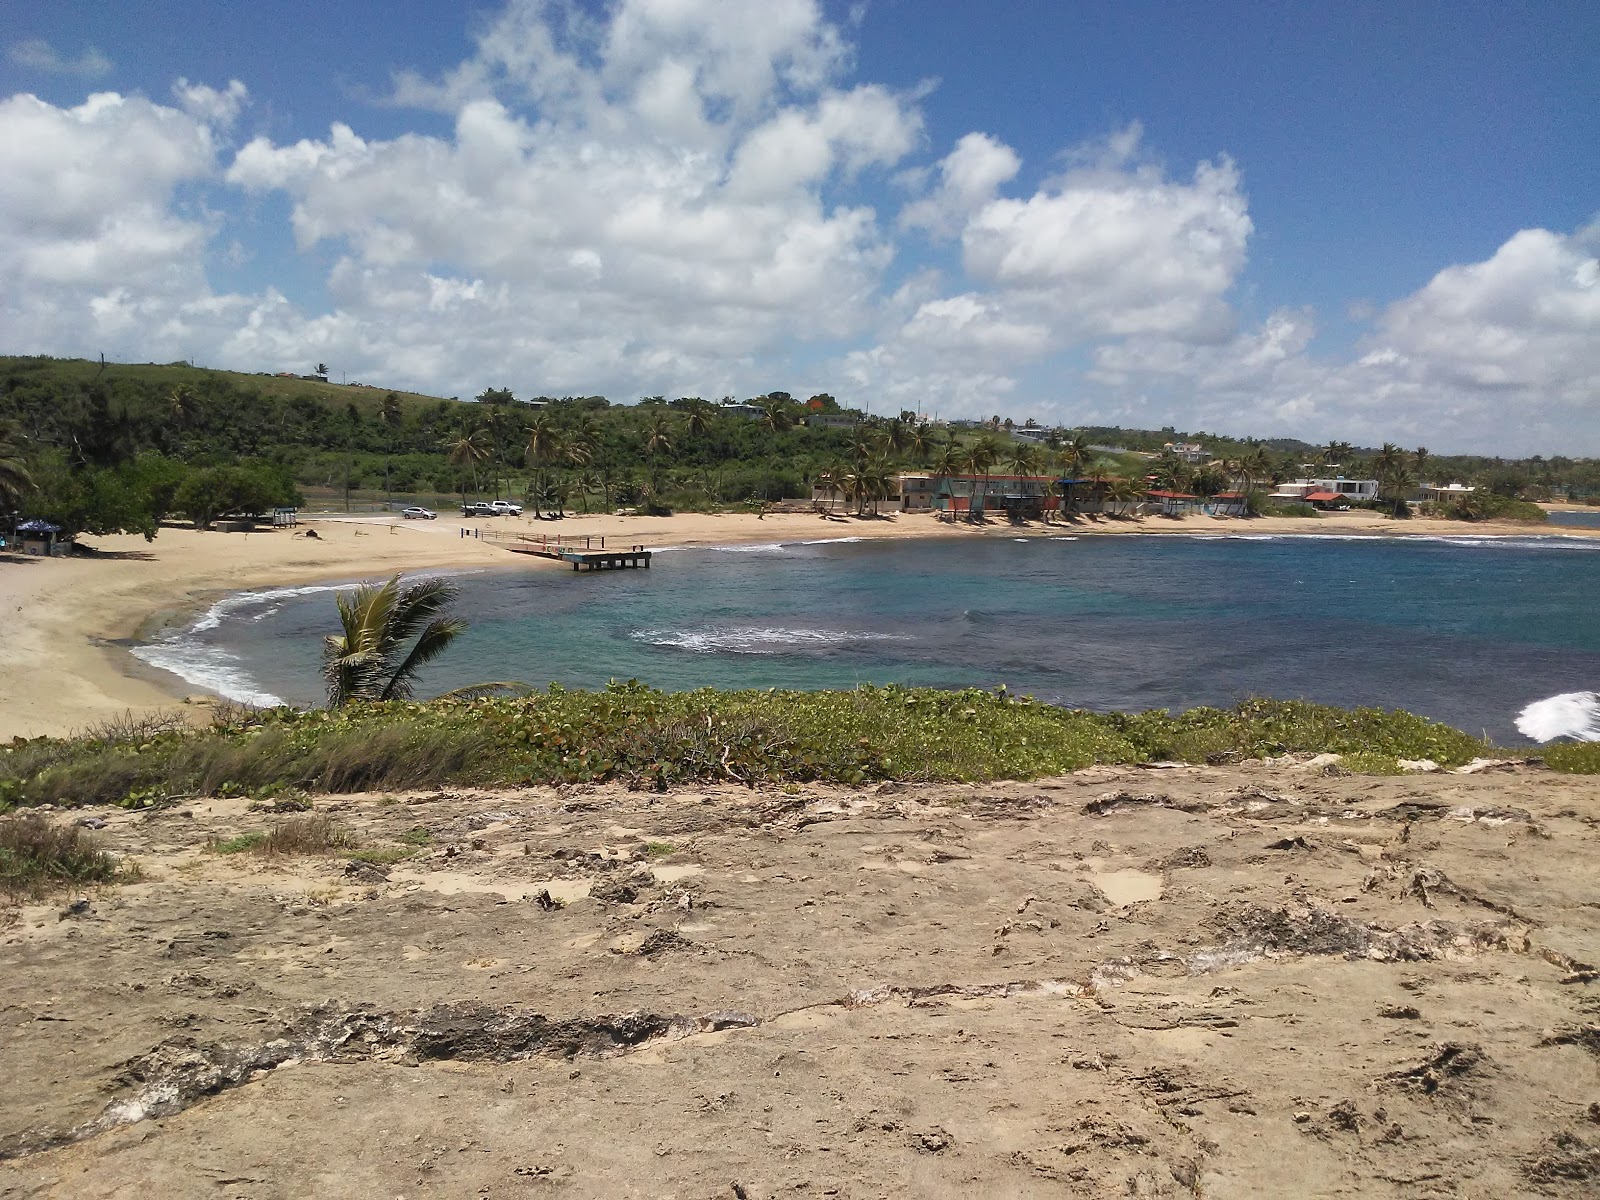 Penon Amador beach'in fotoğrafı geniş ile birlikte